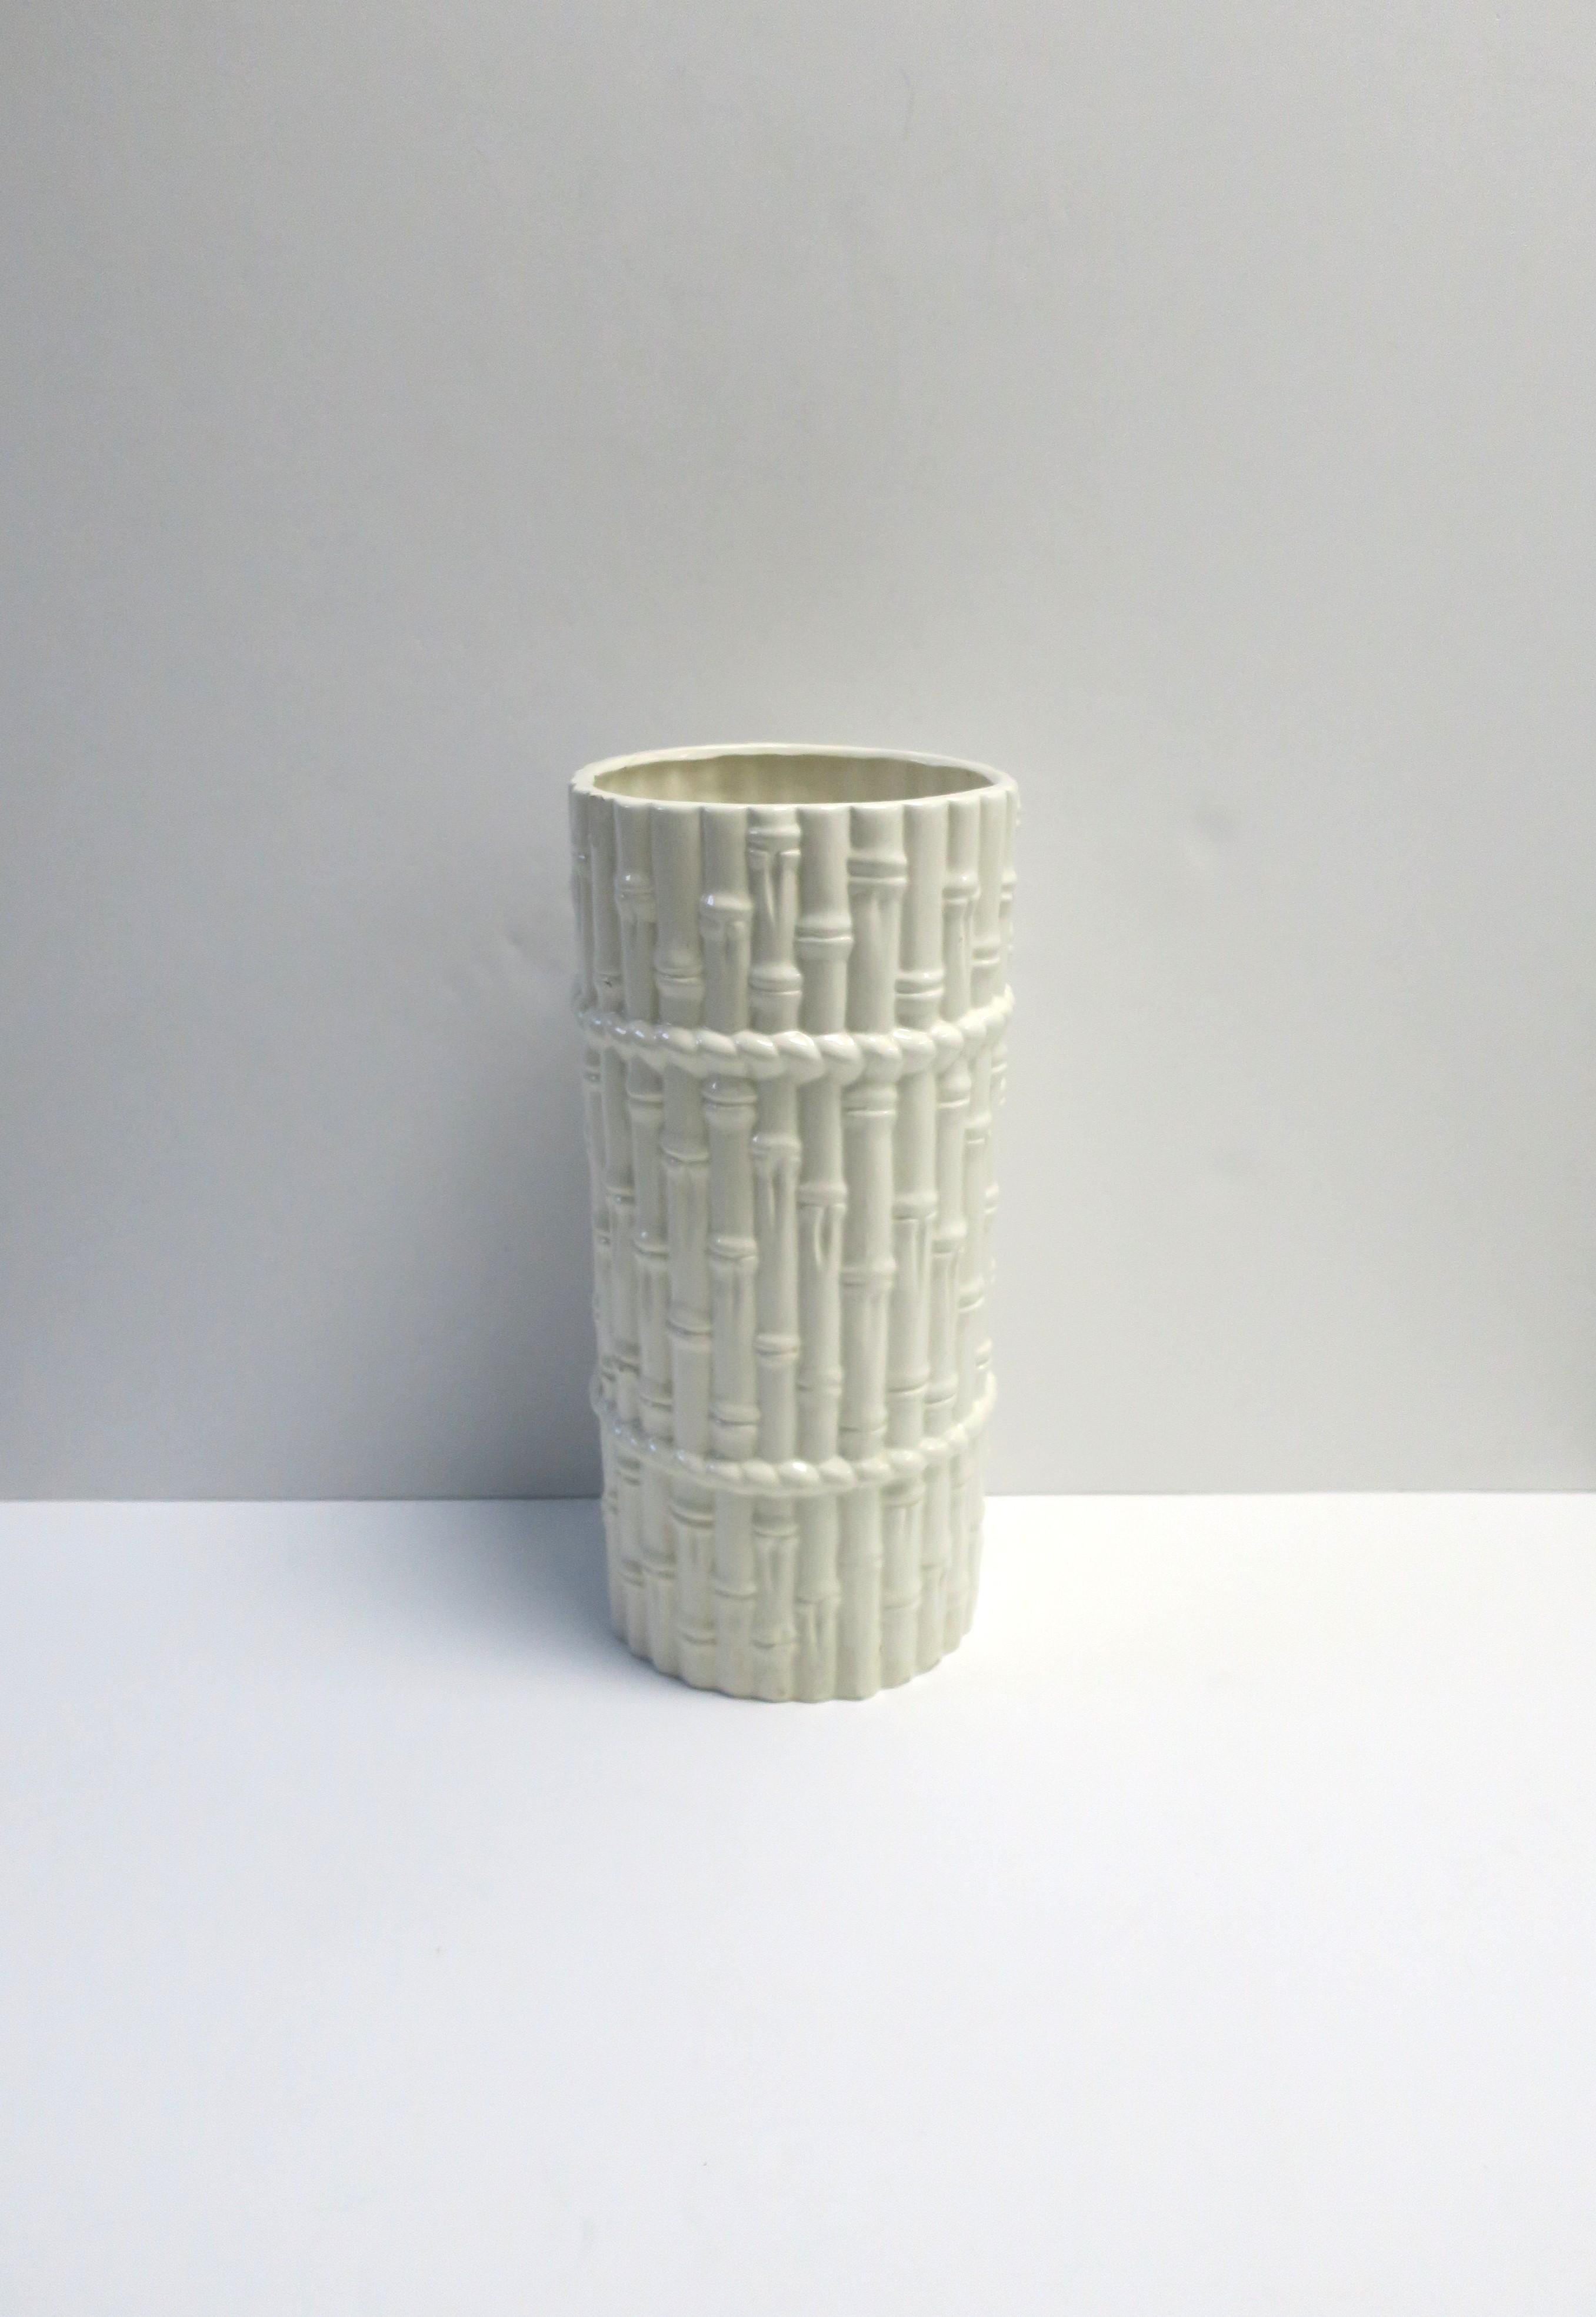 Schirmständer aus weiß glasierter Keramik mit Bambusmotiv, ca. Ende des 20. Jahrhunderts, 1988. Das Stück kann auch als hohe Vase verwendet werden. Abmessungen: 8